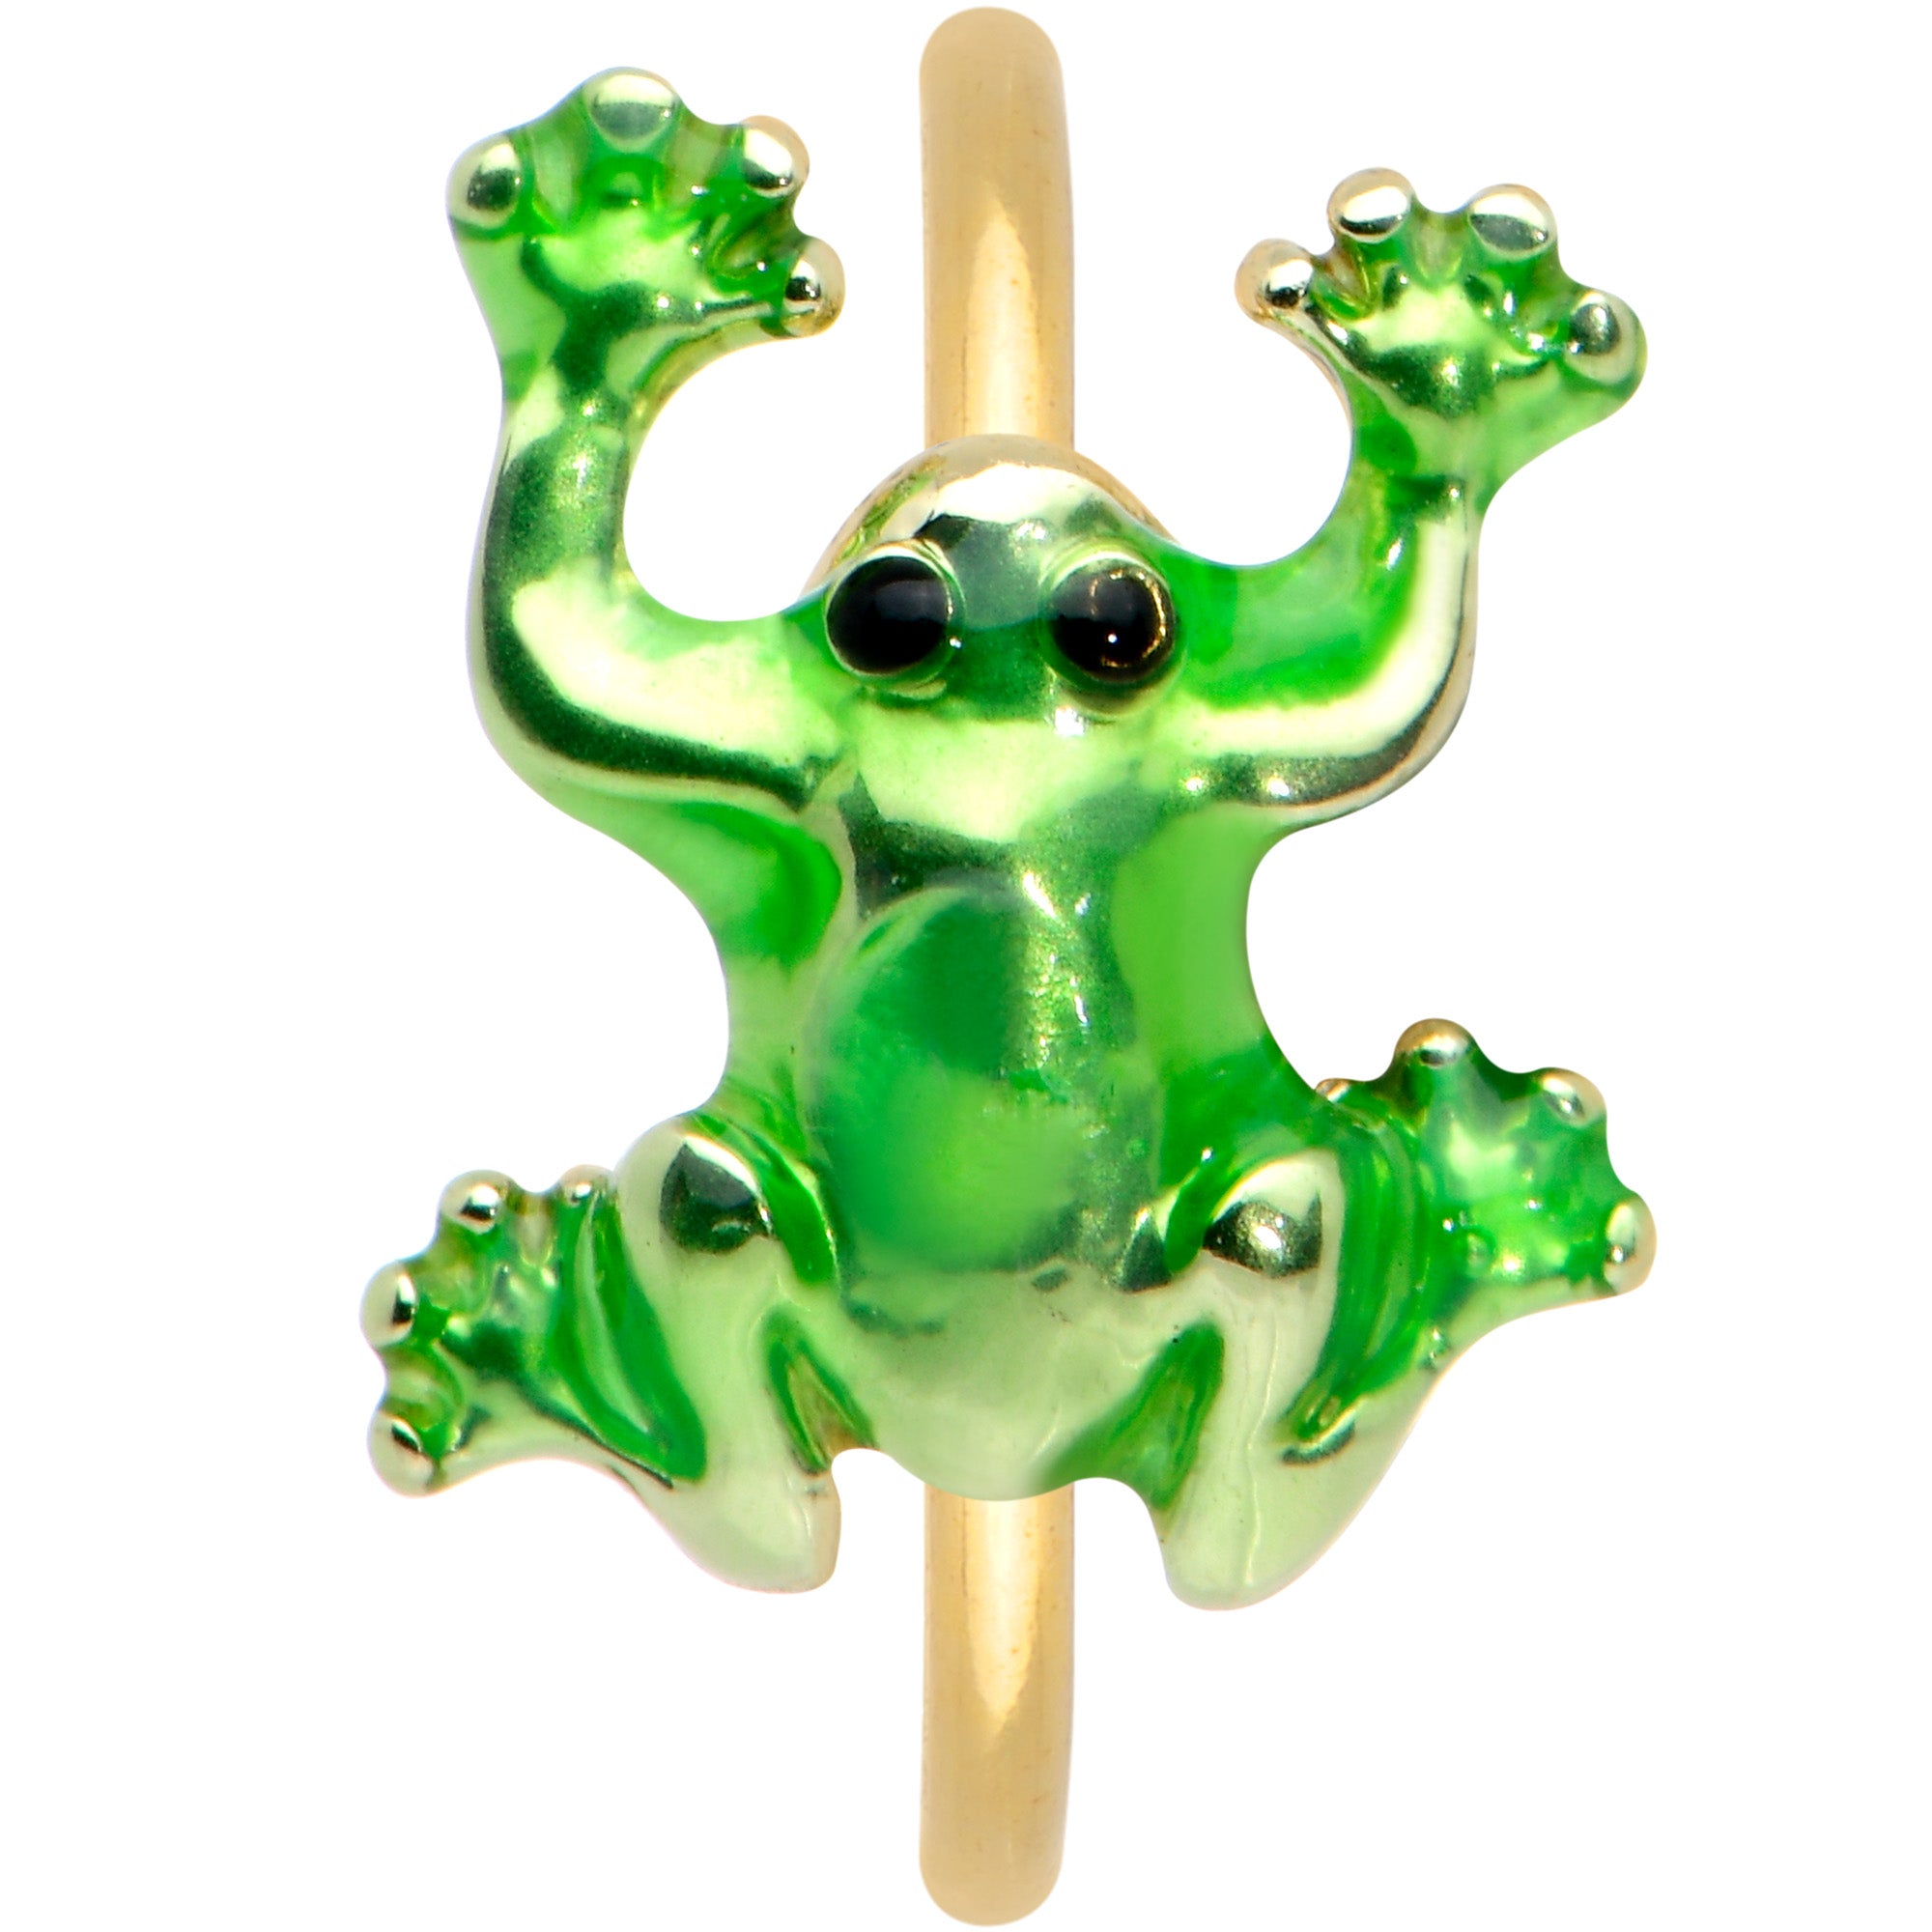 20 Gauge 5/16 Gold Tone Green Tree Frog Nose Hoop